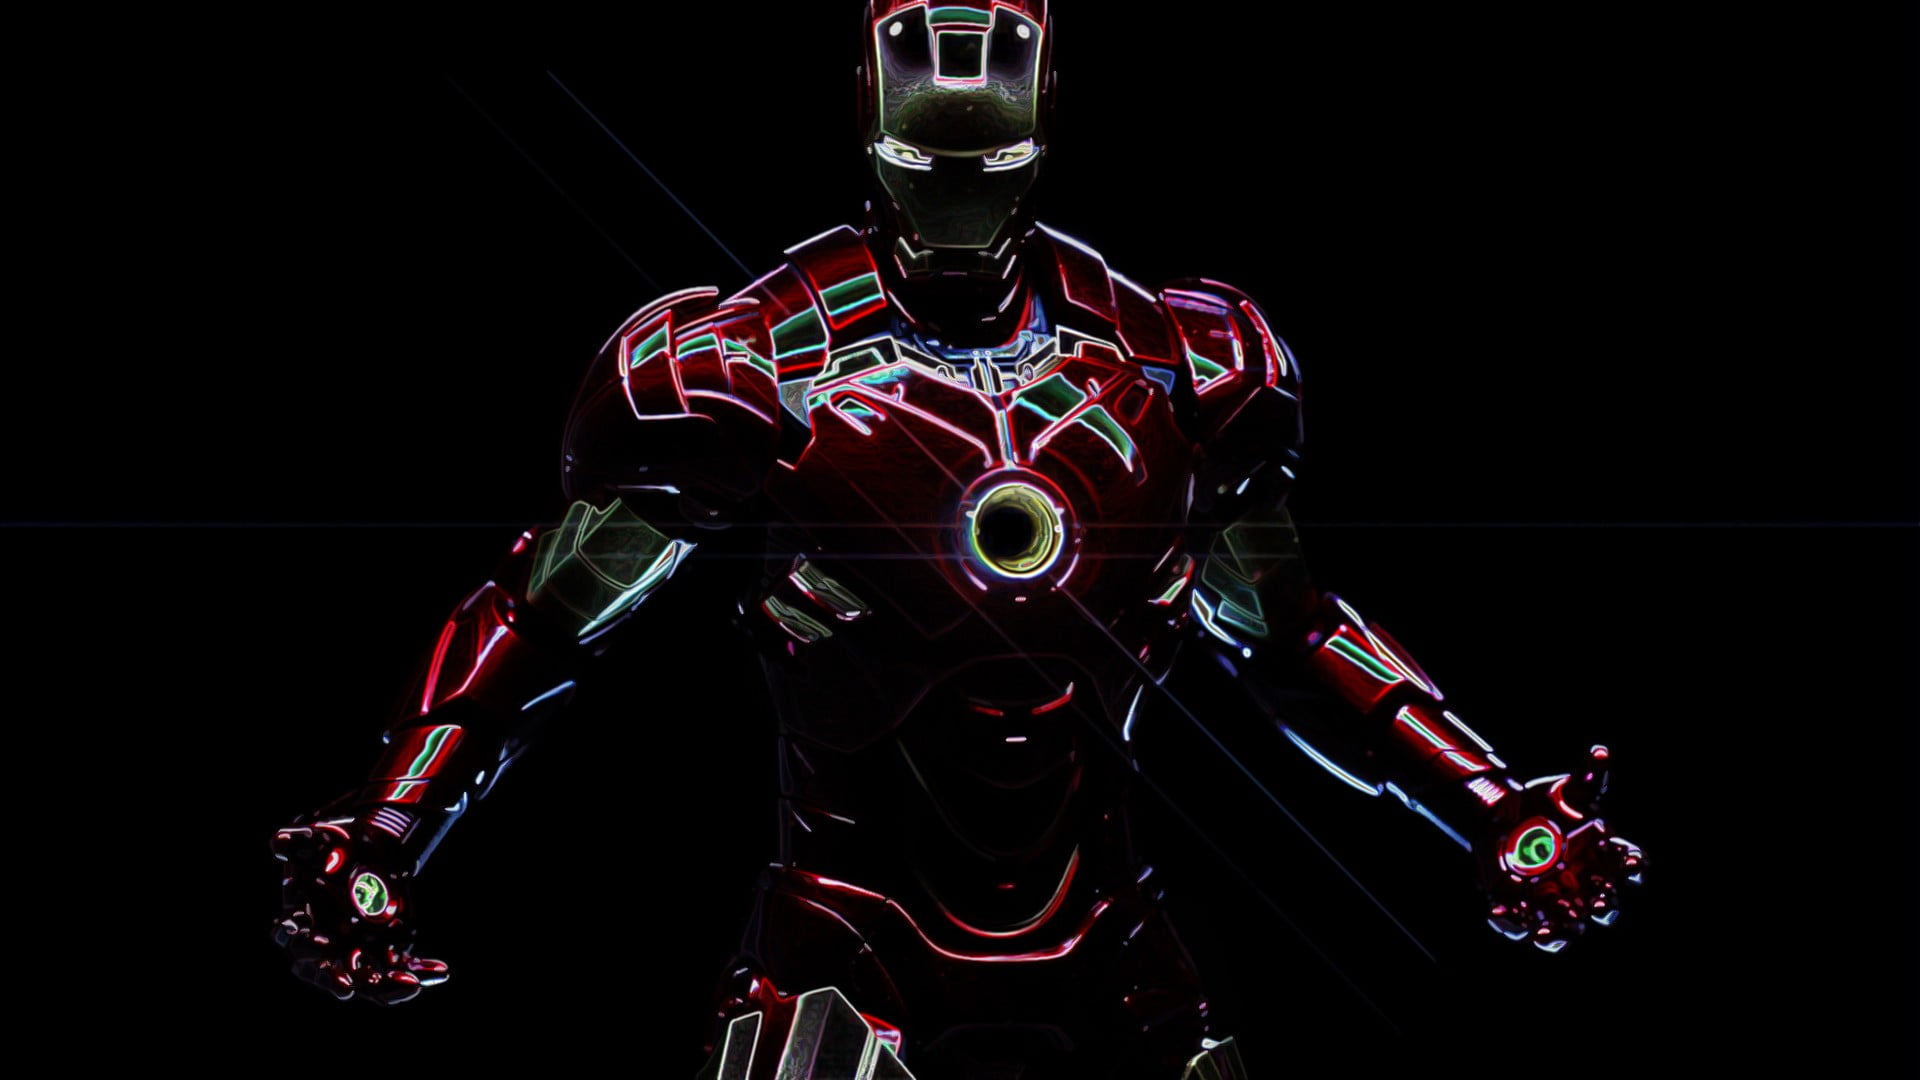 Tony Stark Wallpapers  Top 20 Best Tony Stark Wallpapers Download